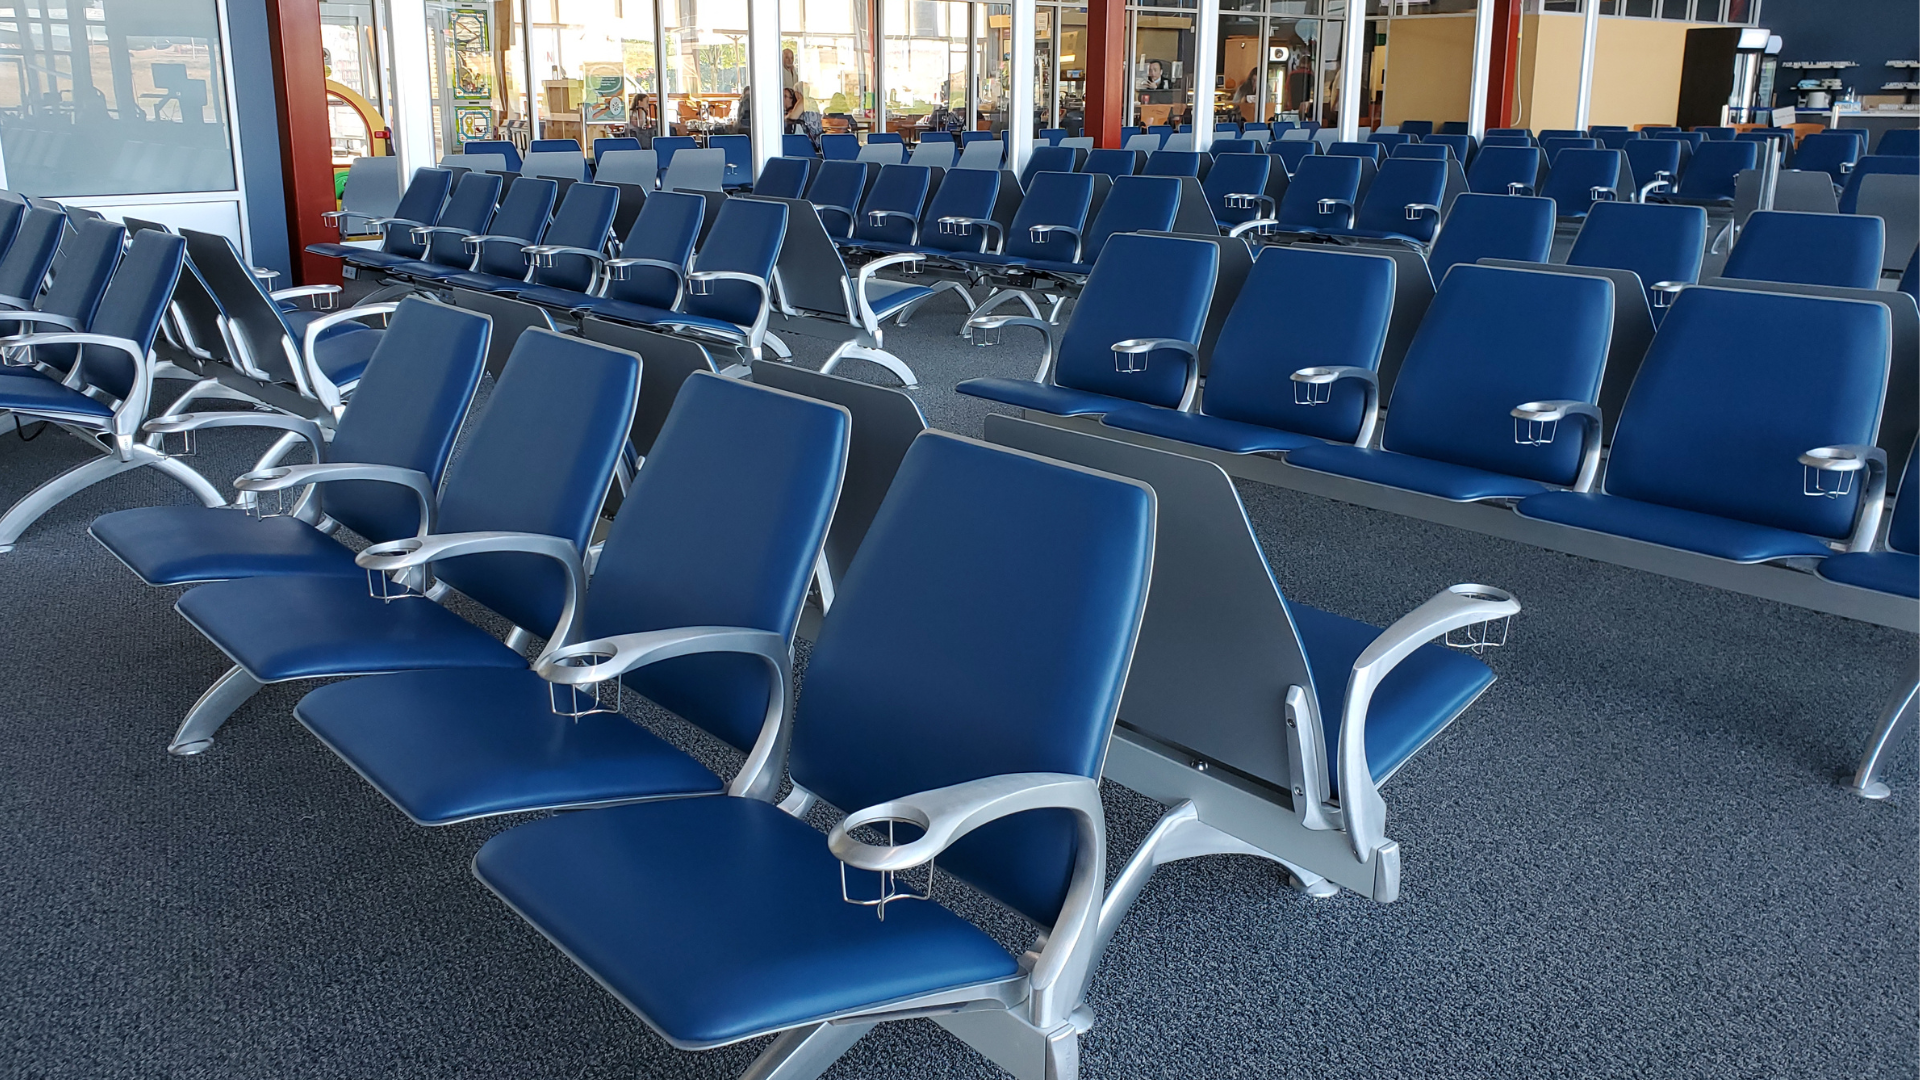 Image de la zone de sièges de l’aéroport remplie de chaises bleues